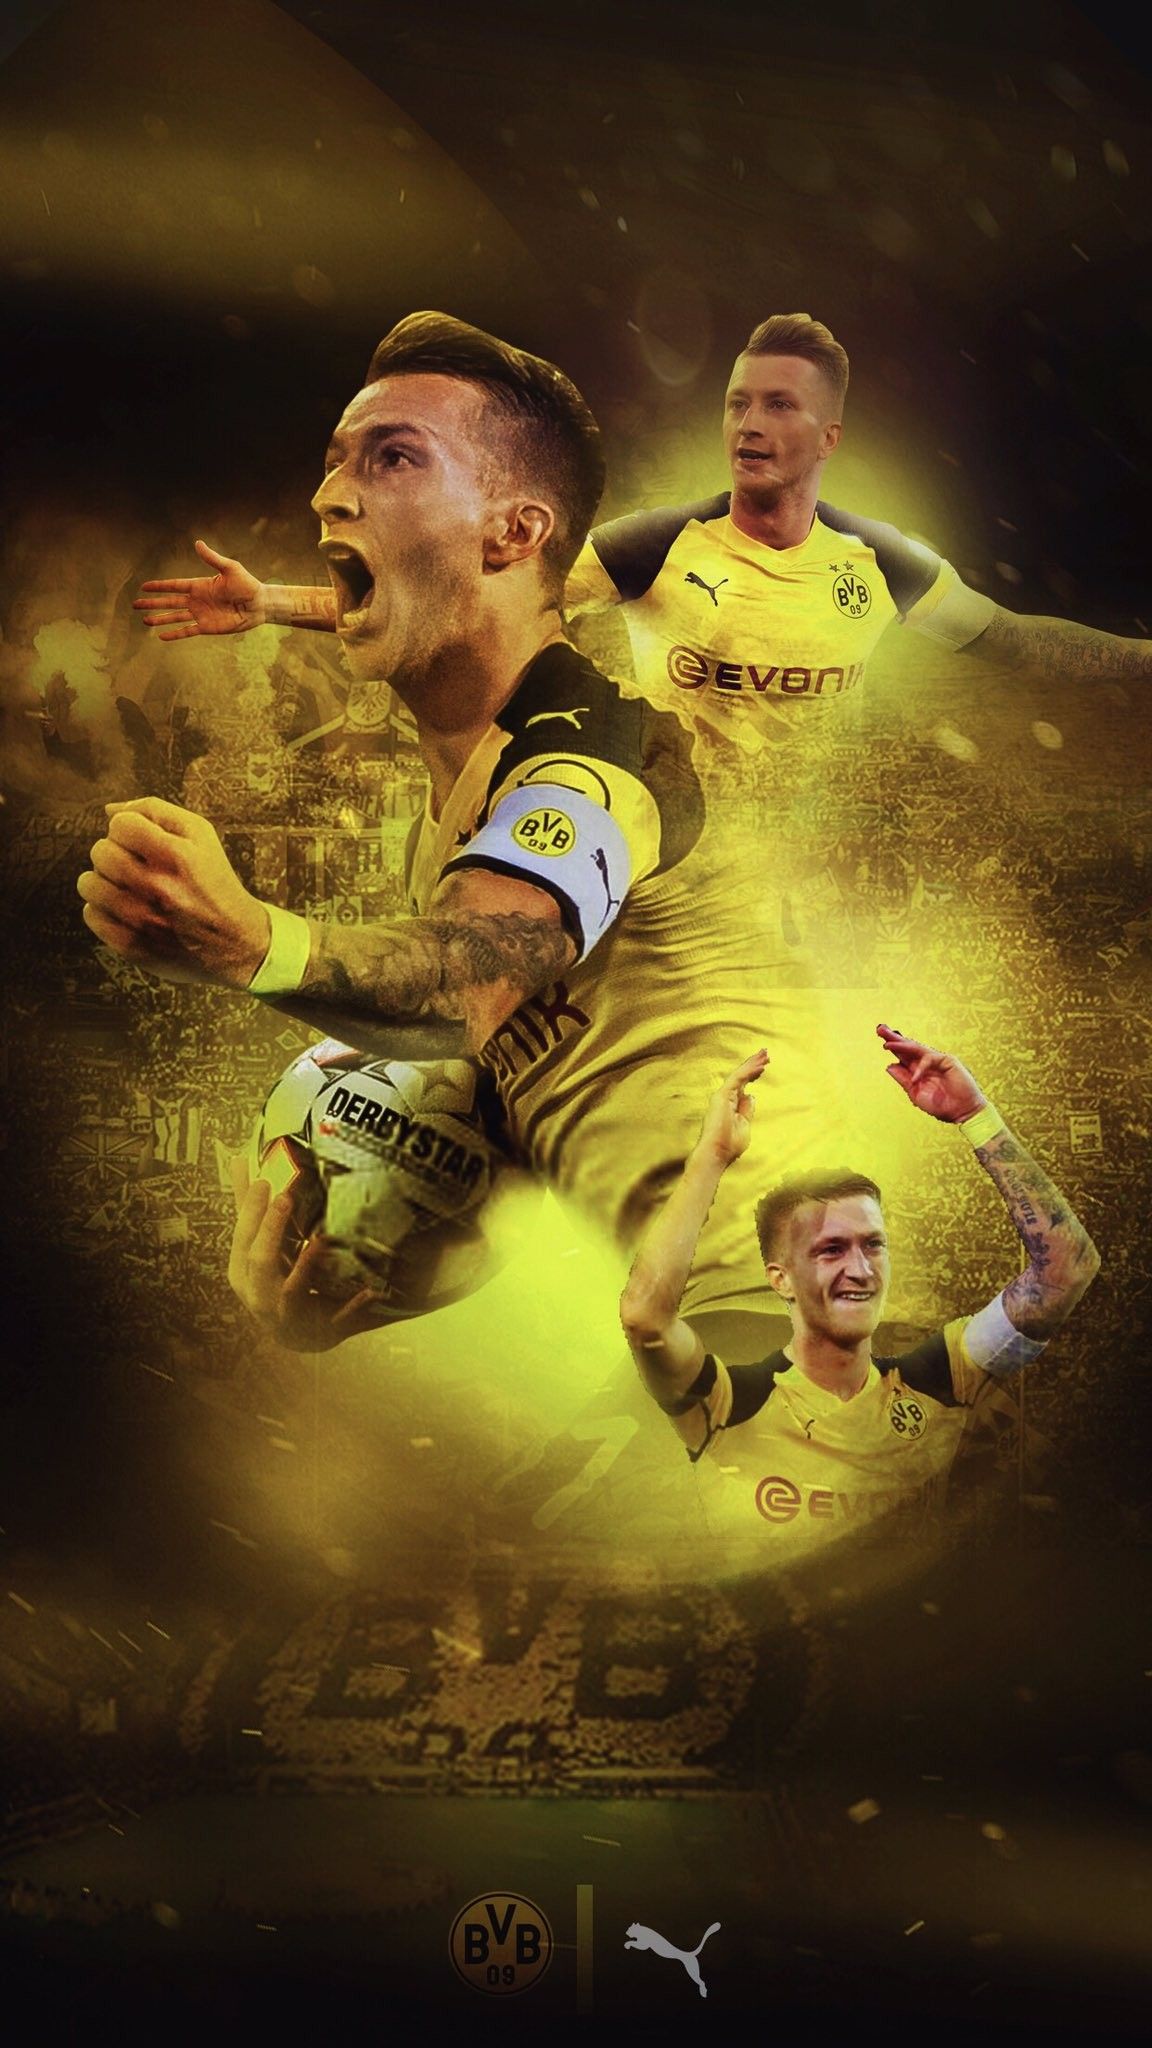 Pin Von Iron Man Auf Football Borussia Dortmund Wallpaper